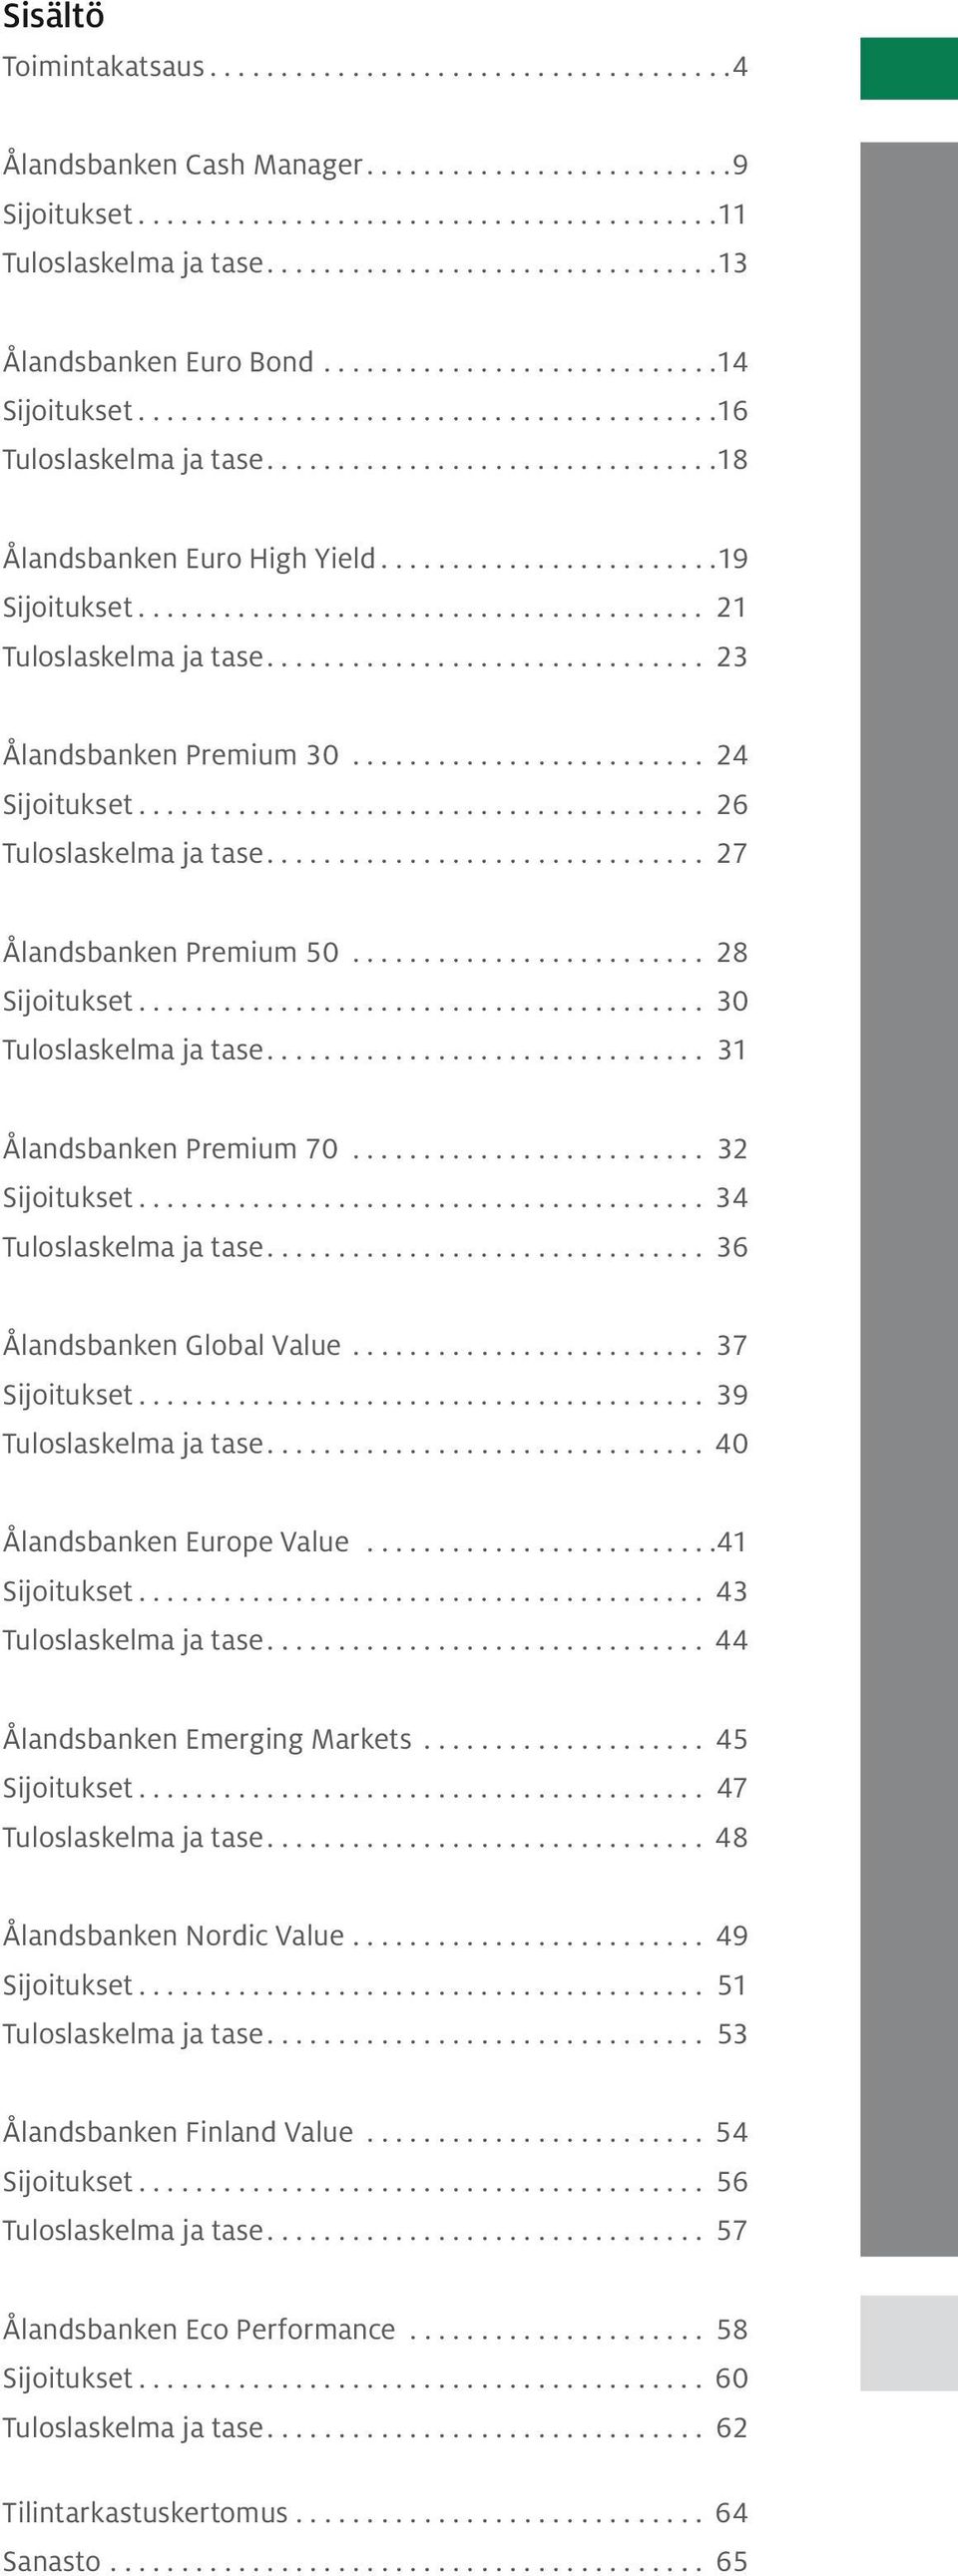 .. 28 Sijoitukset... 30 Tuloslaskelma ja tase.... 31 Ålandsbanken Premium 70... 32 Sijoitukset... 34 Tuloslaskelma ja tase.... 36 Ålandsbanken Global Value... 37 Sijoitukset... 39 Tuloslaskelma ja tase.